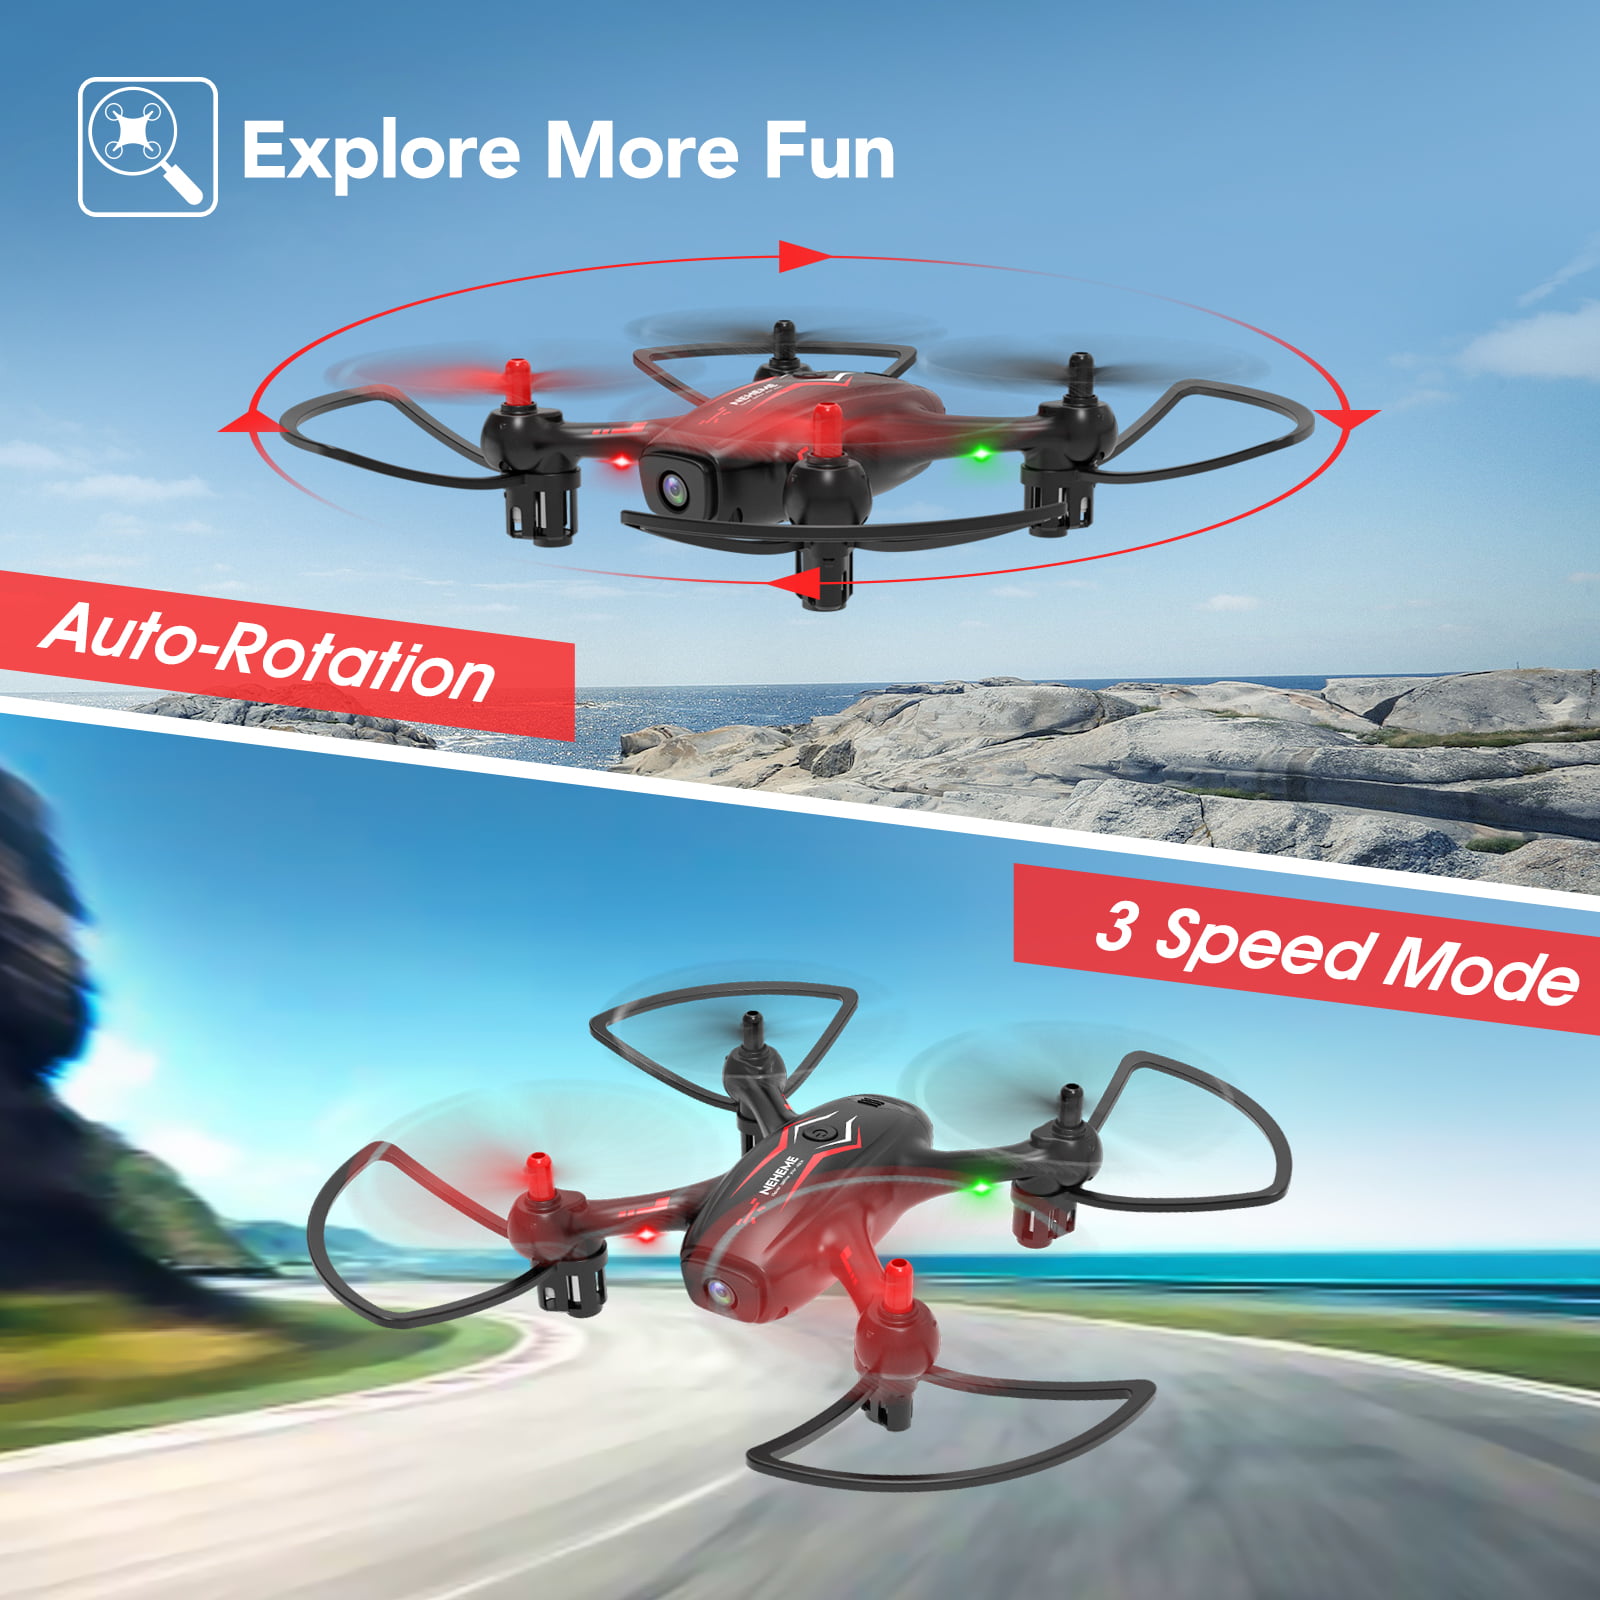 Neheme NH530 Drone Review #Neheme #Drone #dronereview #impressions